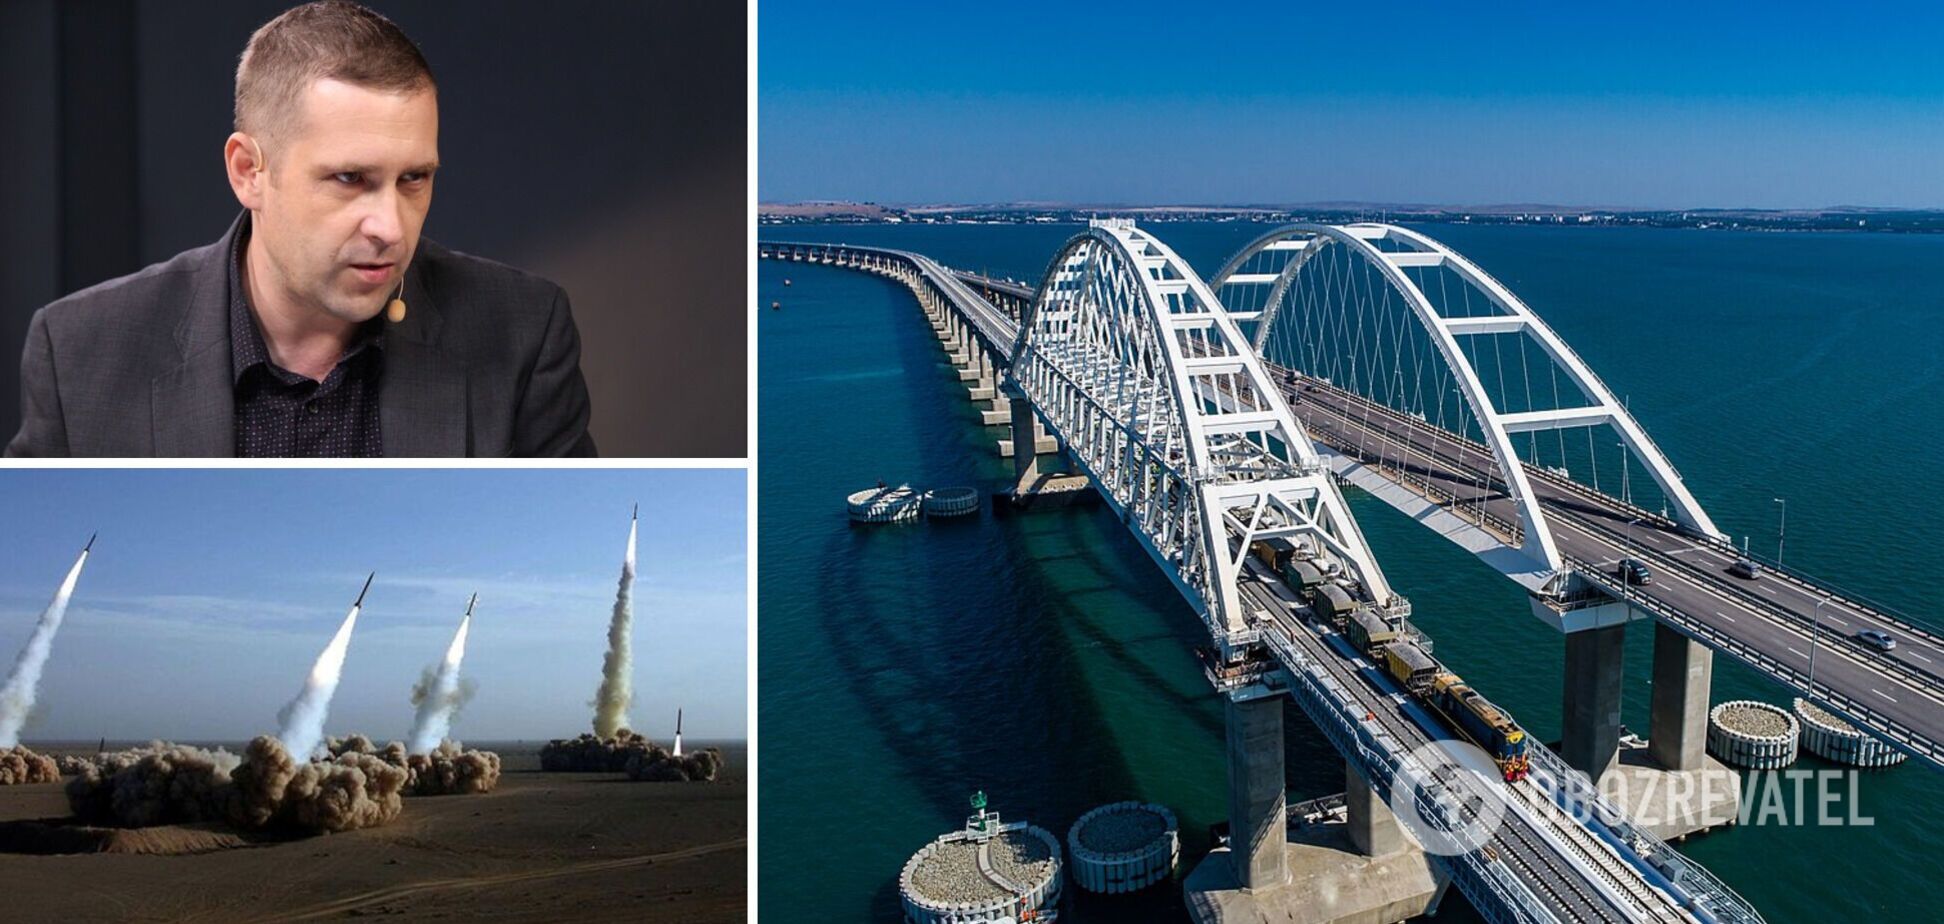 Бабин: Крымский мост должен быть уничтожен даже после победы Украины. Интервью